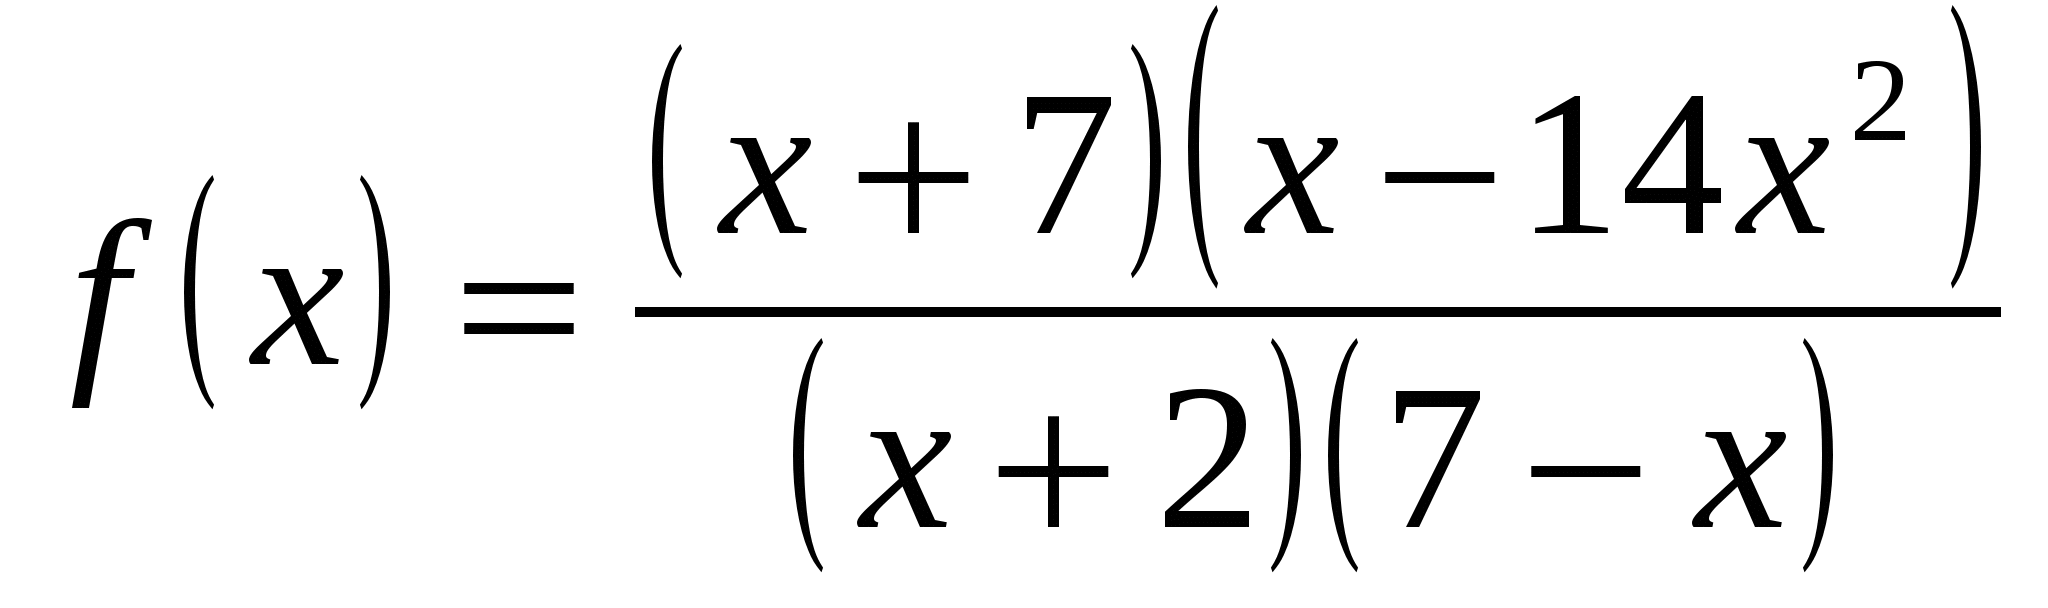 Урок по алгебре на тему наибольшее и наименьшее значения функции на отрезке